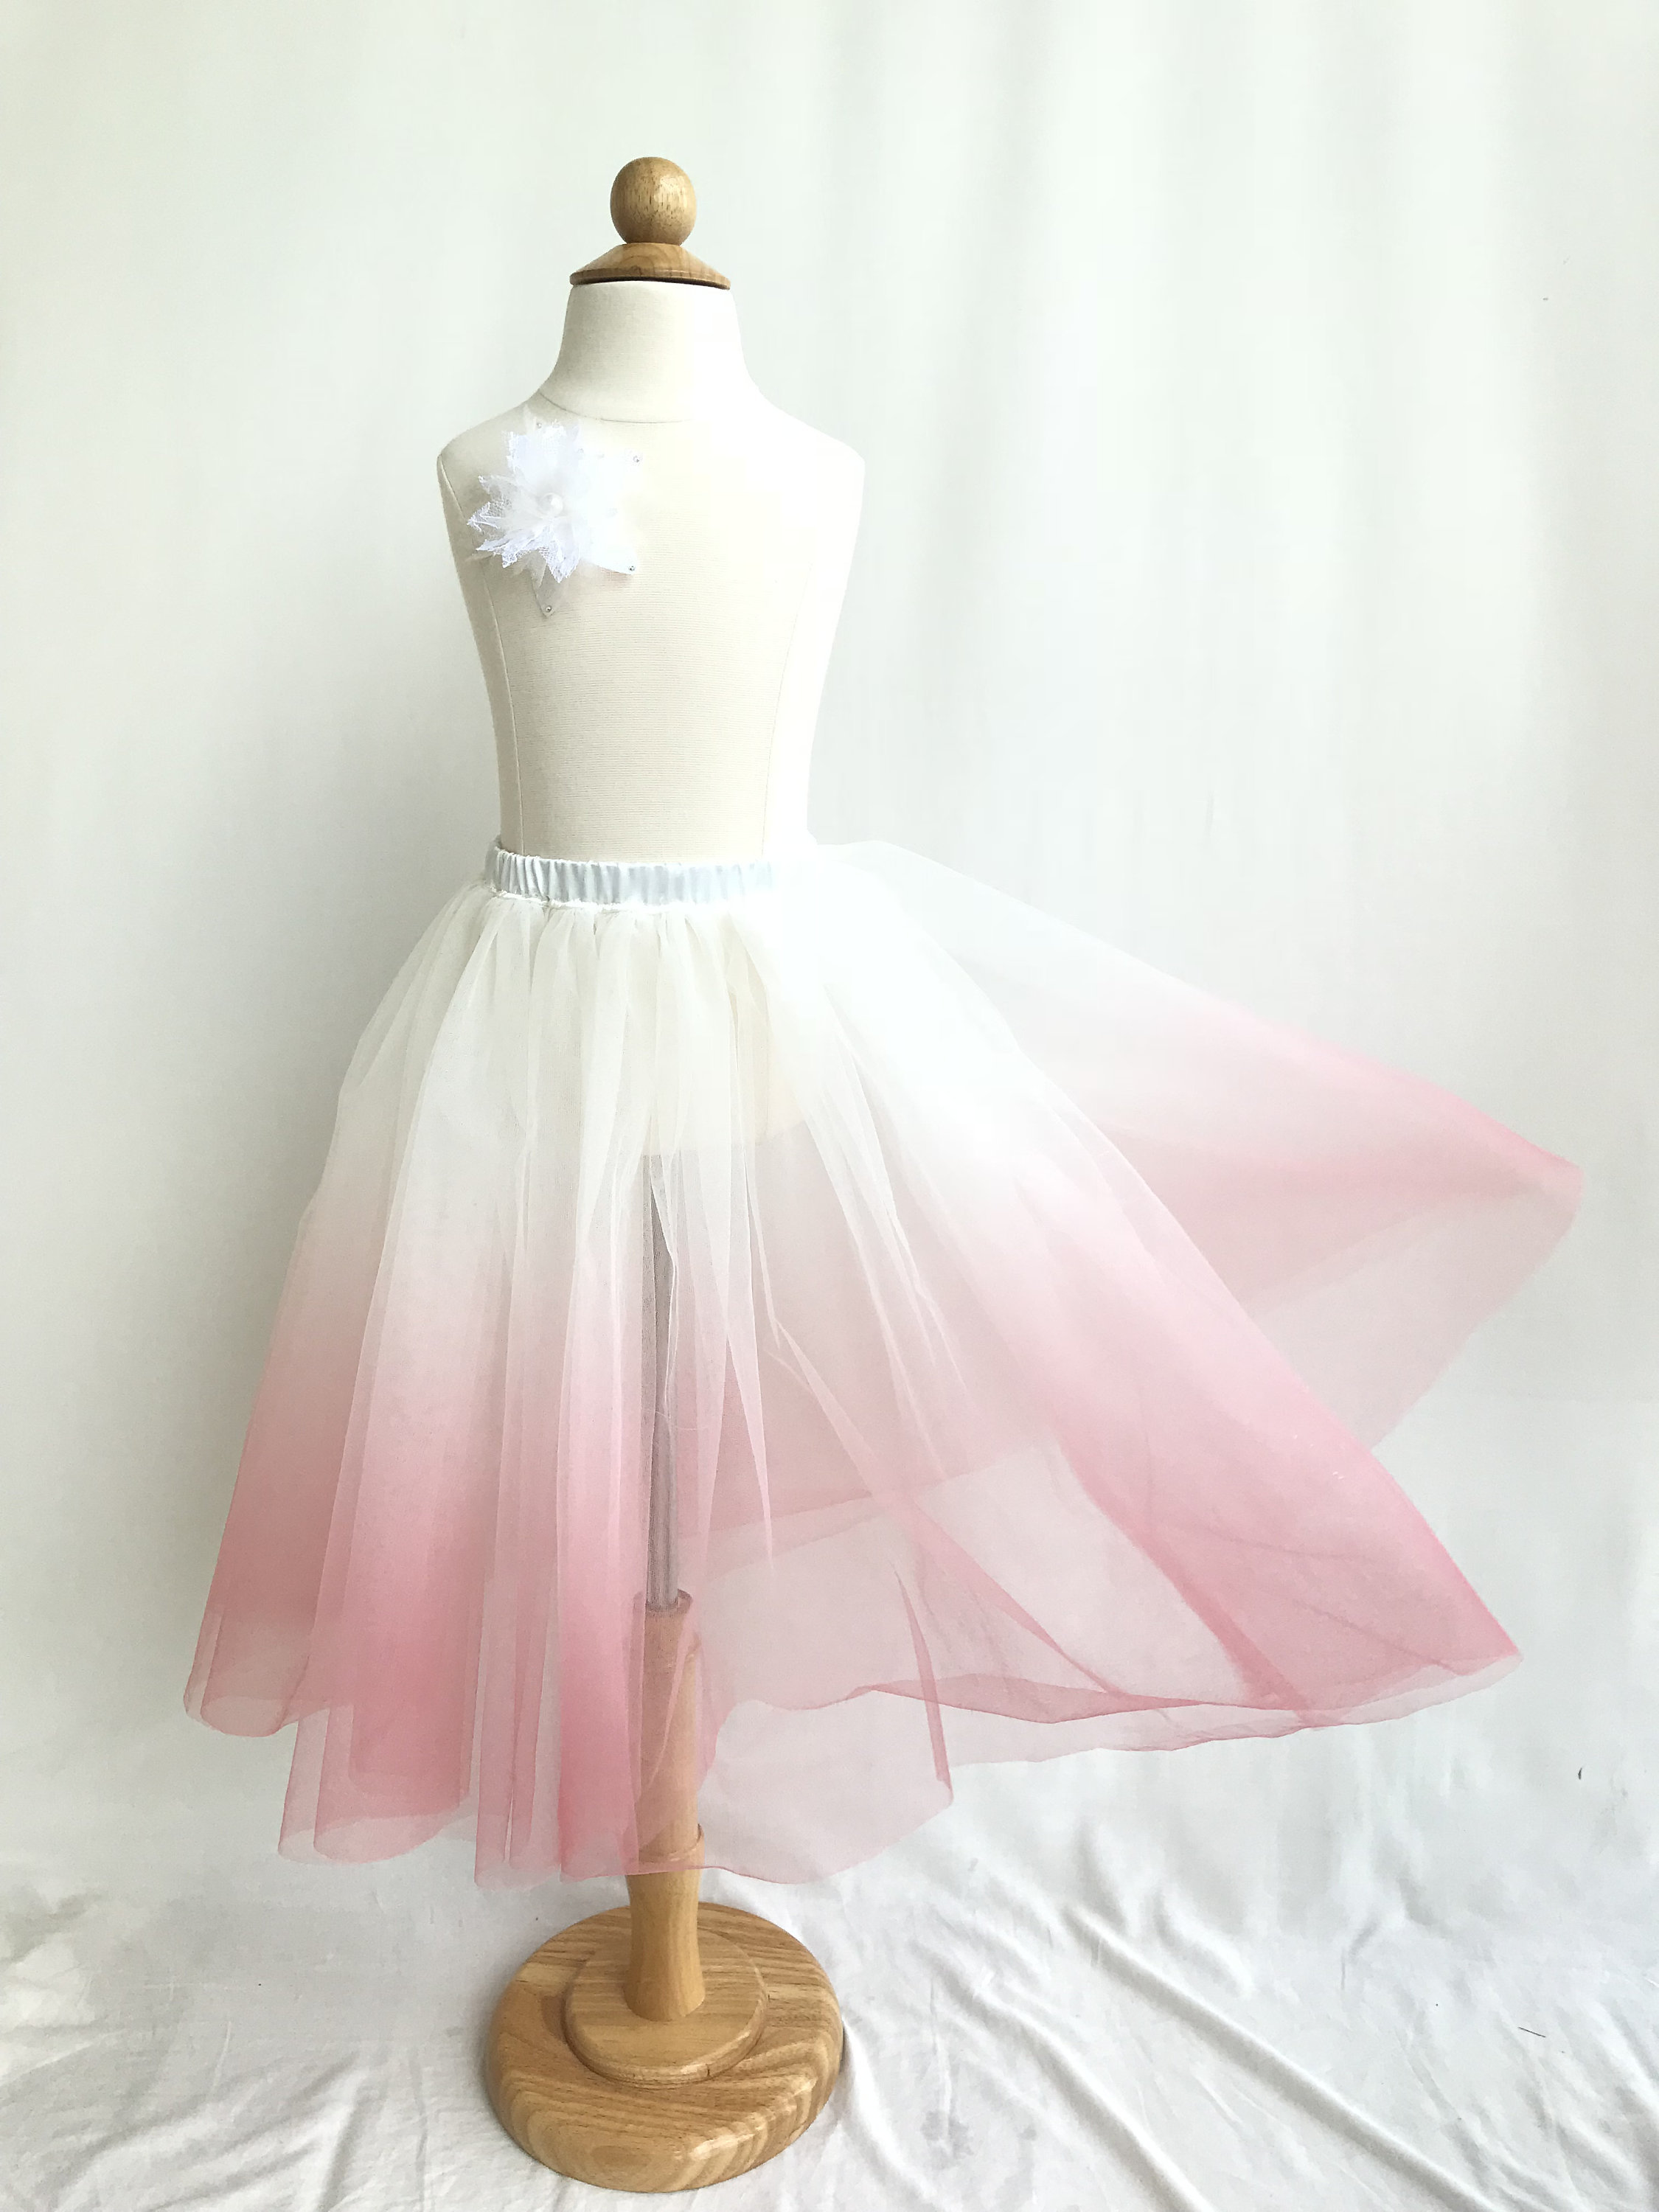 Ombré Dance Skirt. Pink Ombre Skirt. Rehearsal Skirt. Beach | Etsy